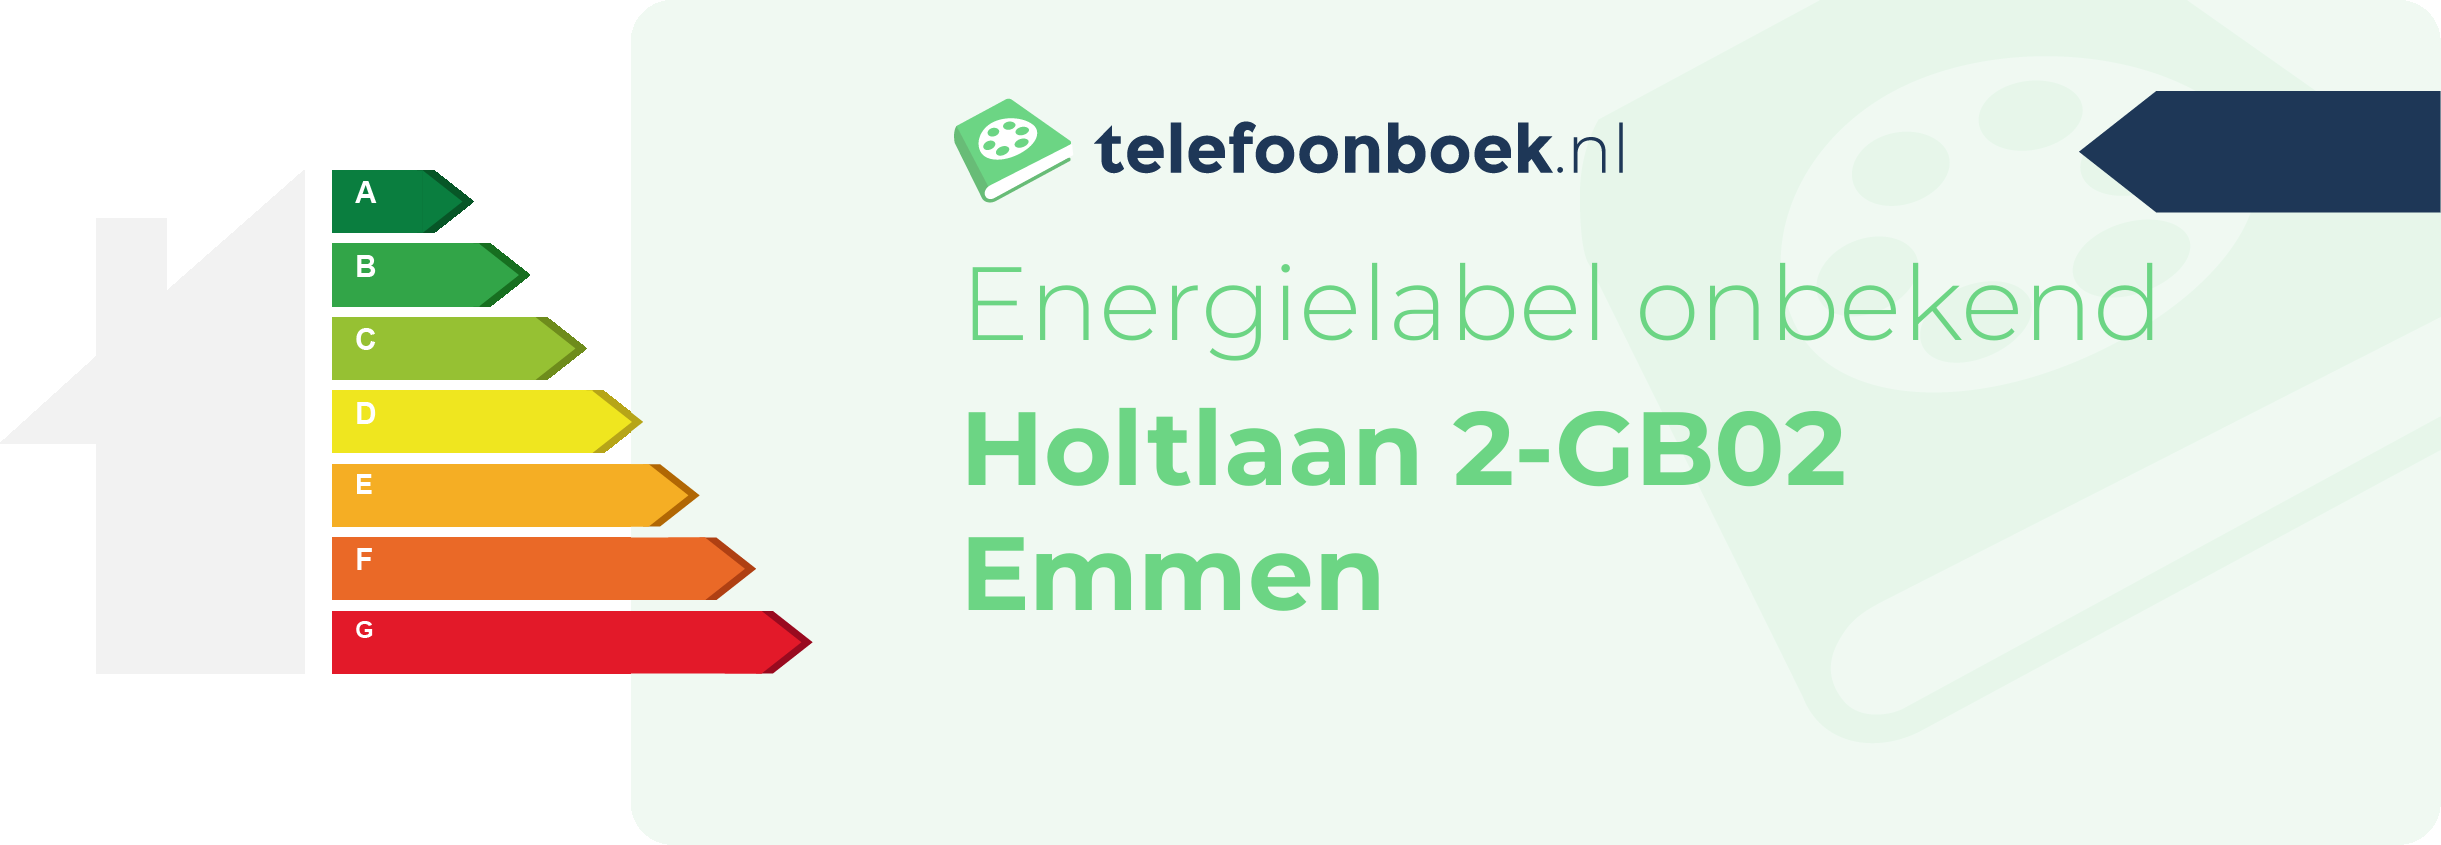 Energielabel Holtlaan 2-GB02 Emmen